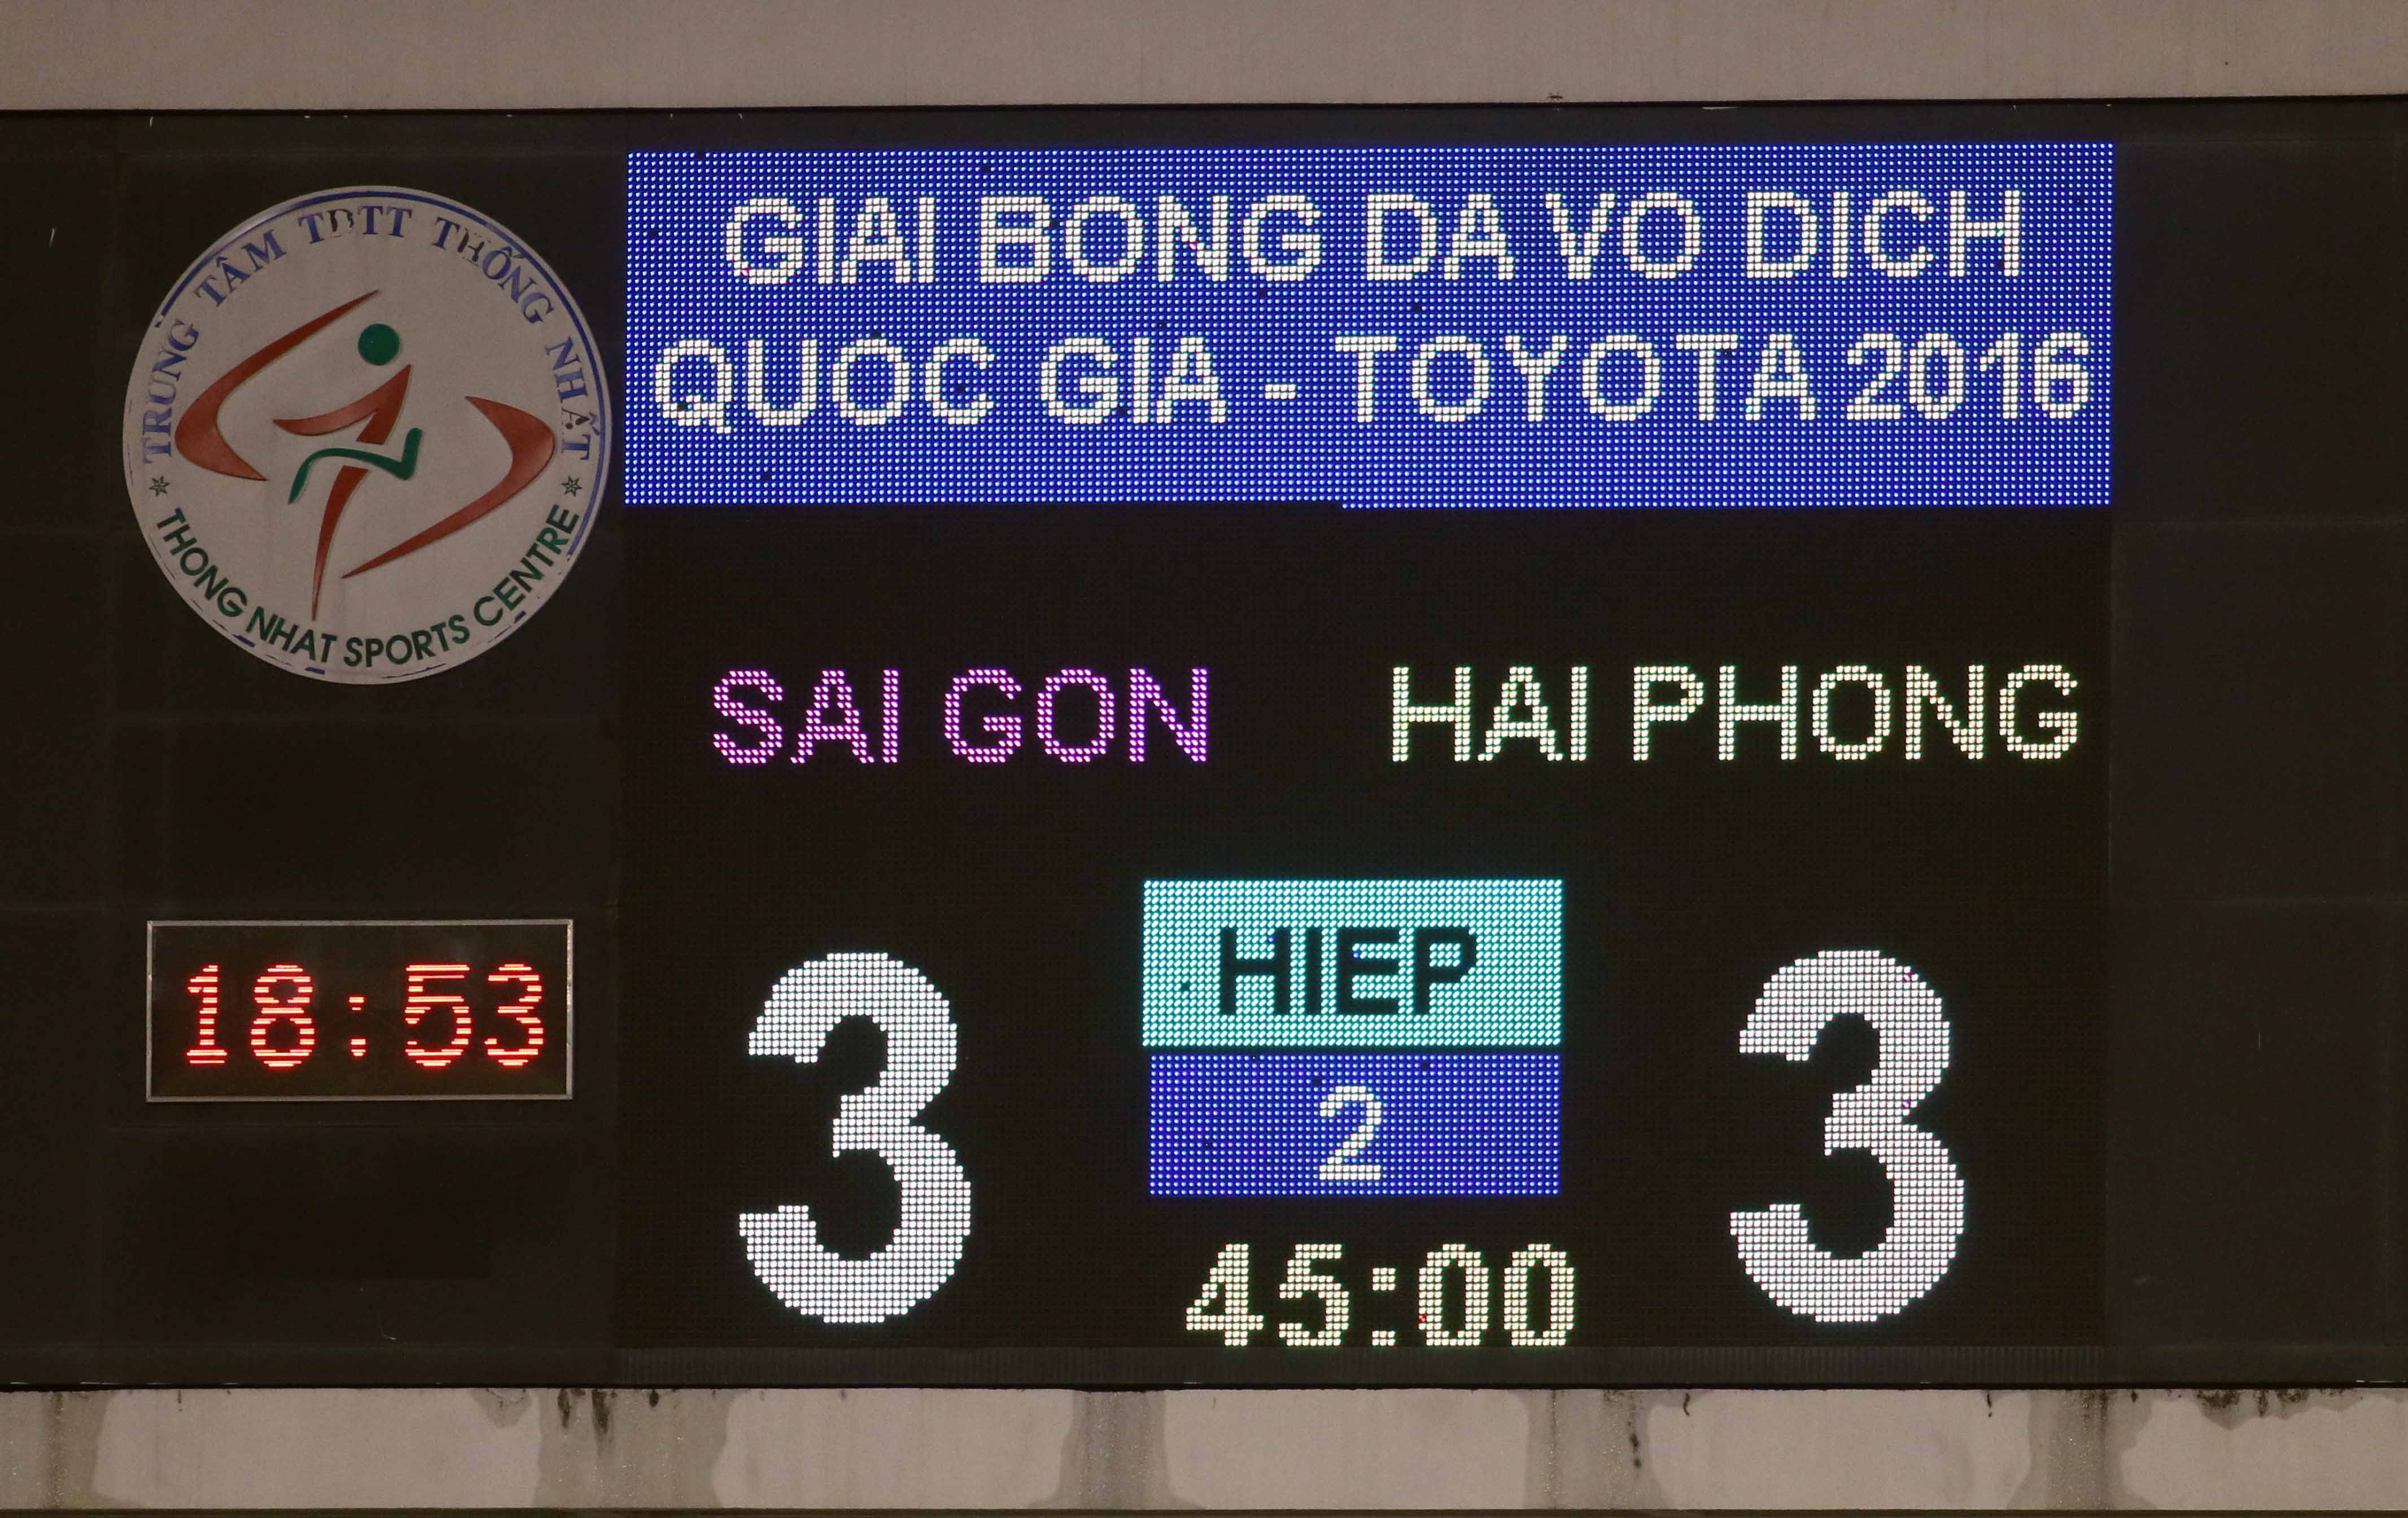 Trận Sài Gòn hòa Hải Phòng 3-3 trên sân Thống Nhất chiều 17-7 ở vòng 16 V-League bị nhiều CĐV nghi vấn. Ảnh: N.K